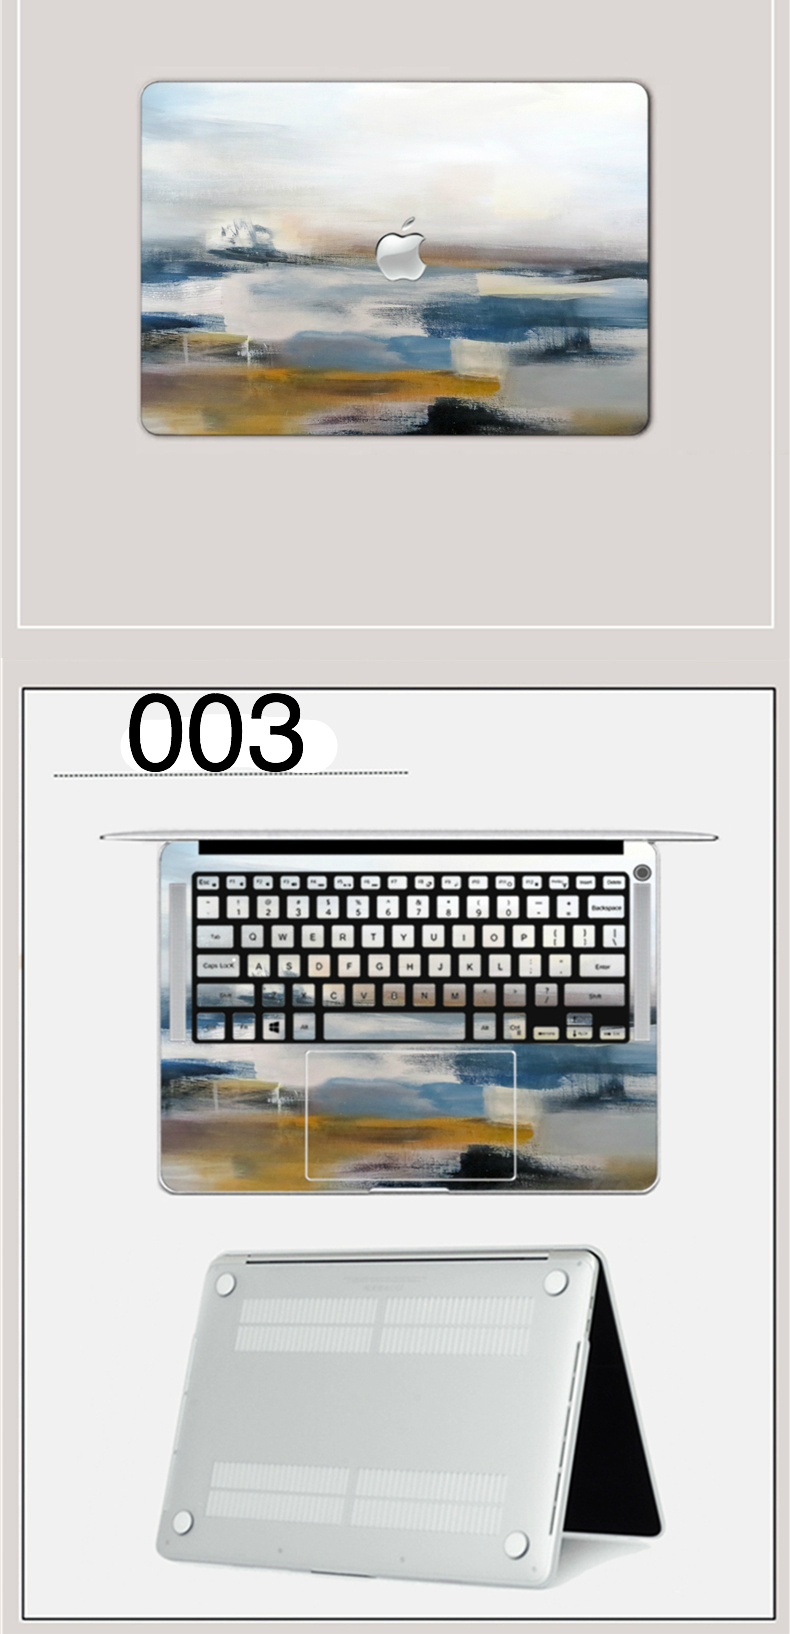 Macbook Pro13 Air 15インチシスティーナ礼拝堂天井画 絵画ソフトシェルプラスチックカバー